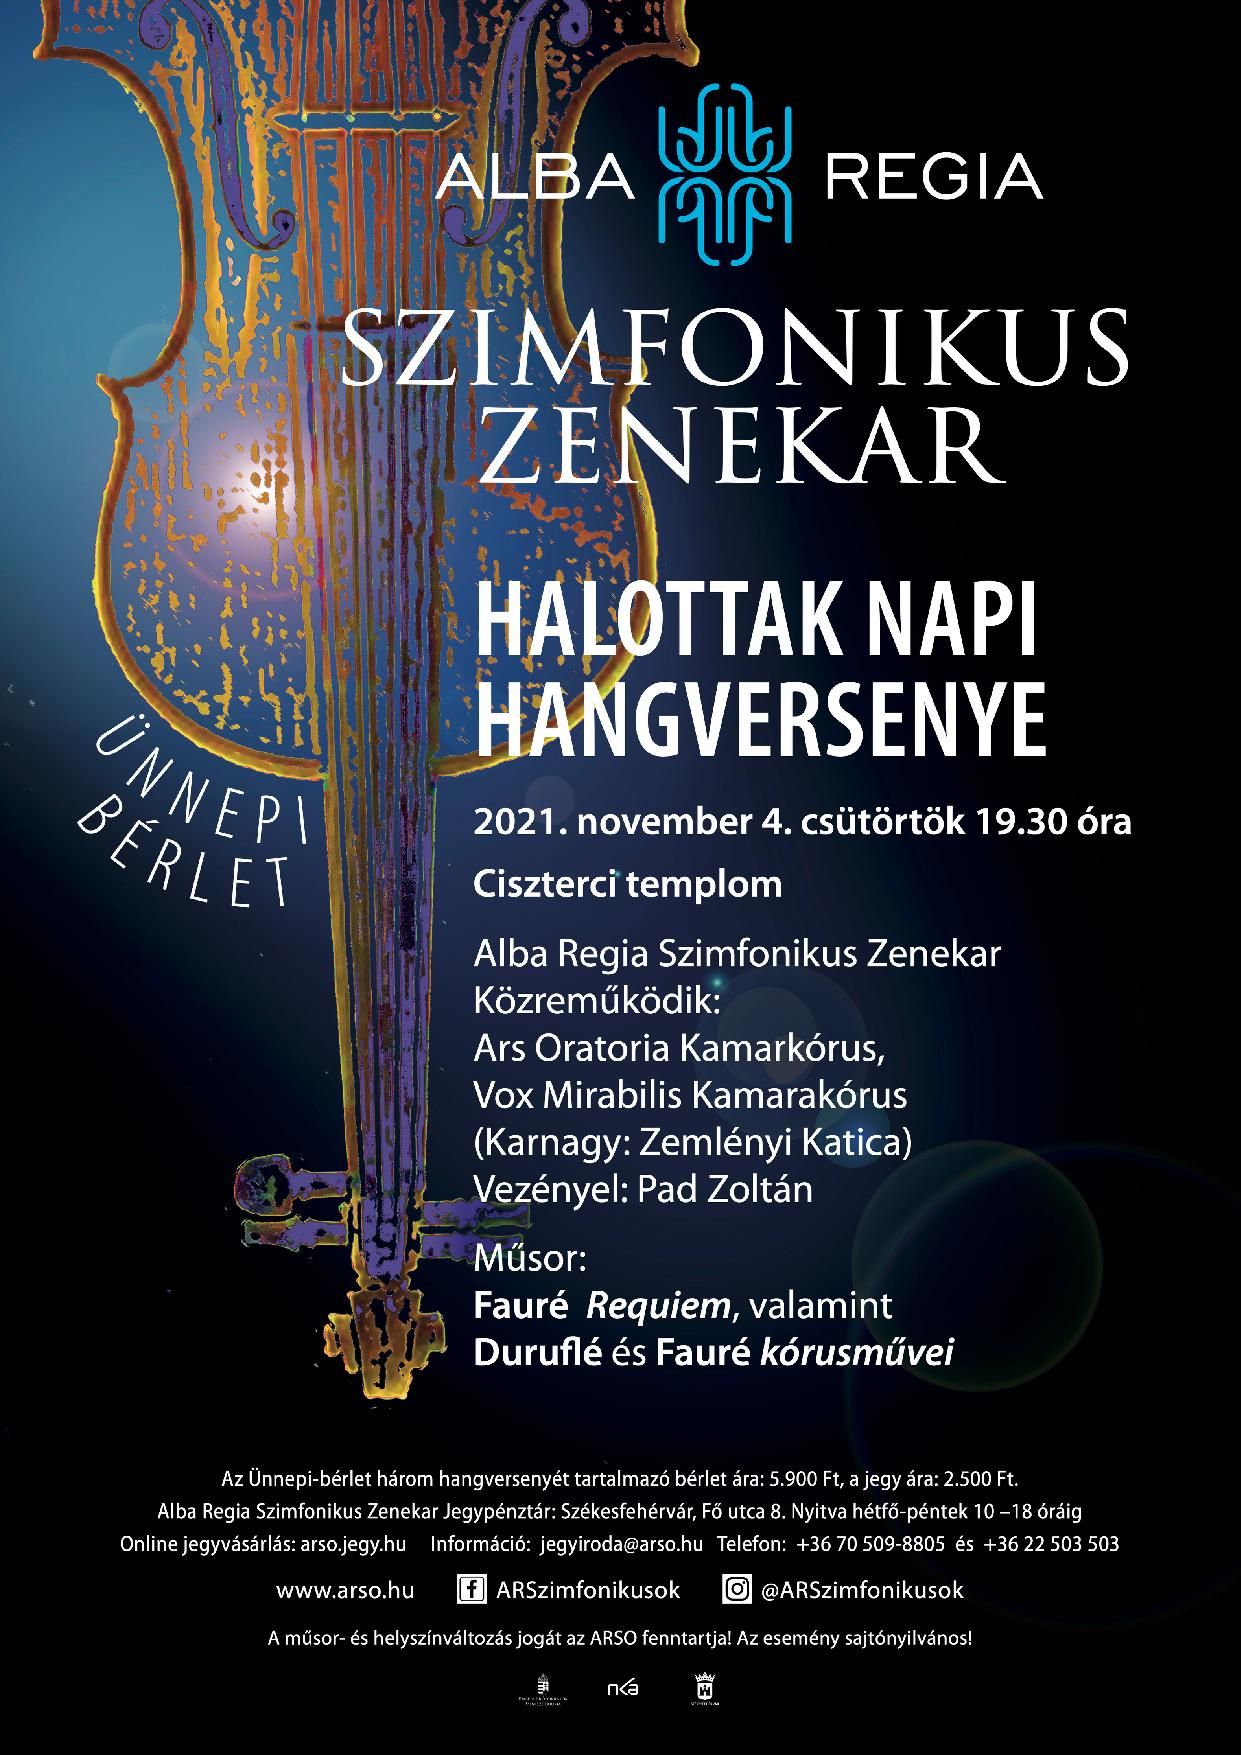 Halottak napi hangversenyt rendez november 4-én az Alba Regia Szimfonikus Zenekar